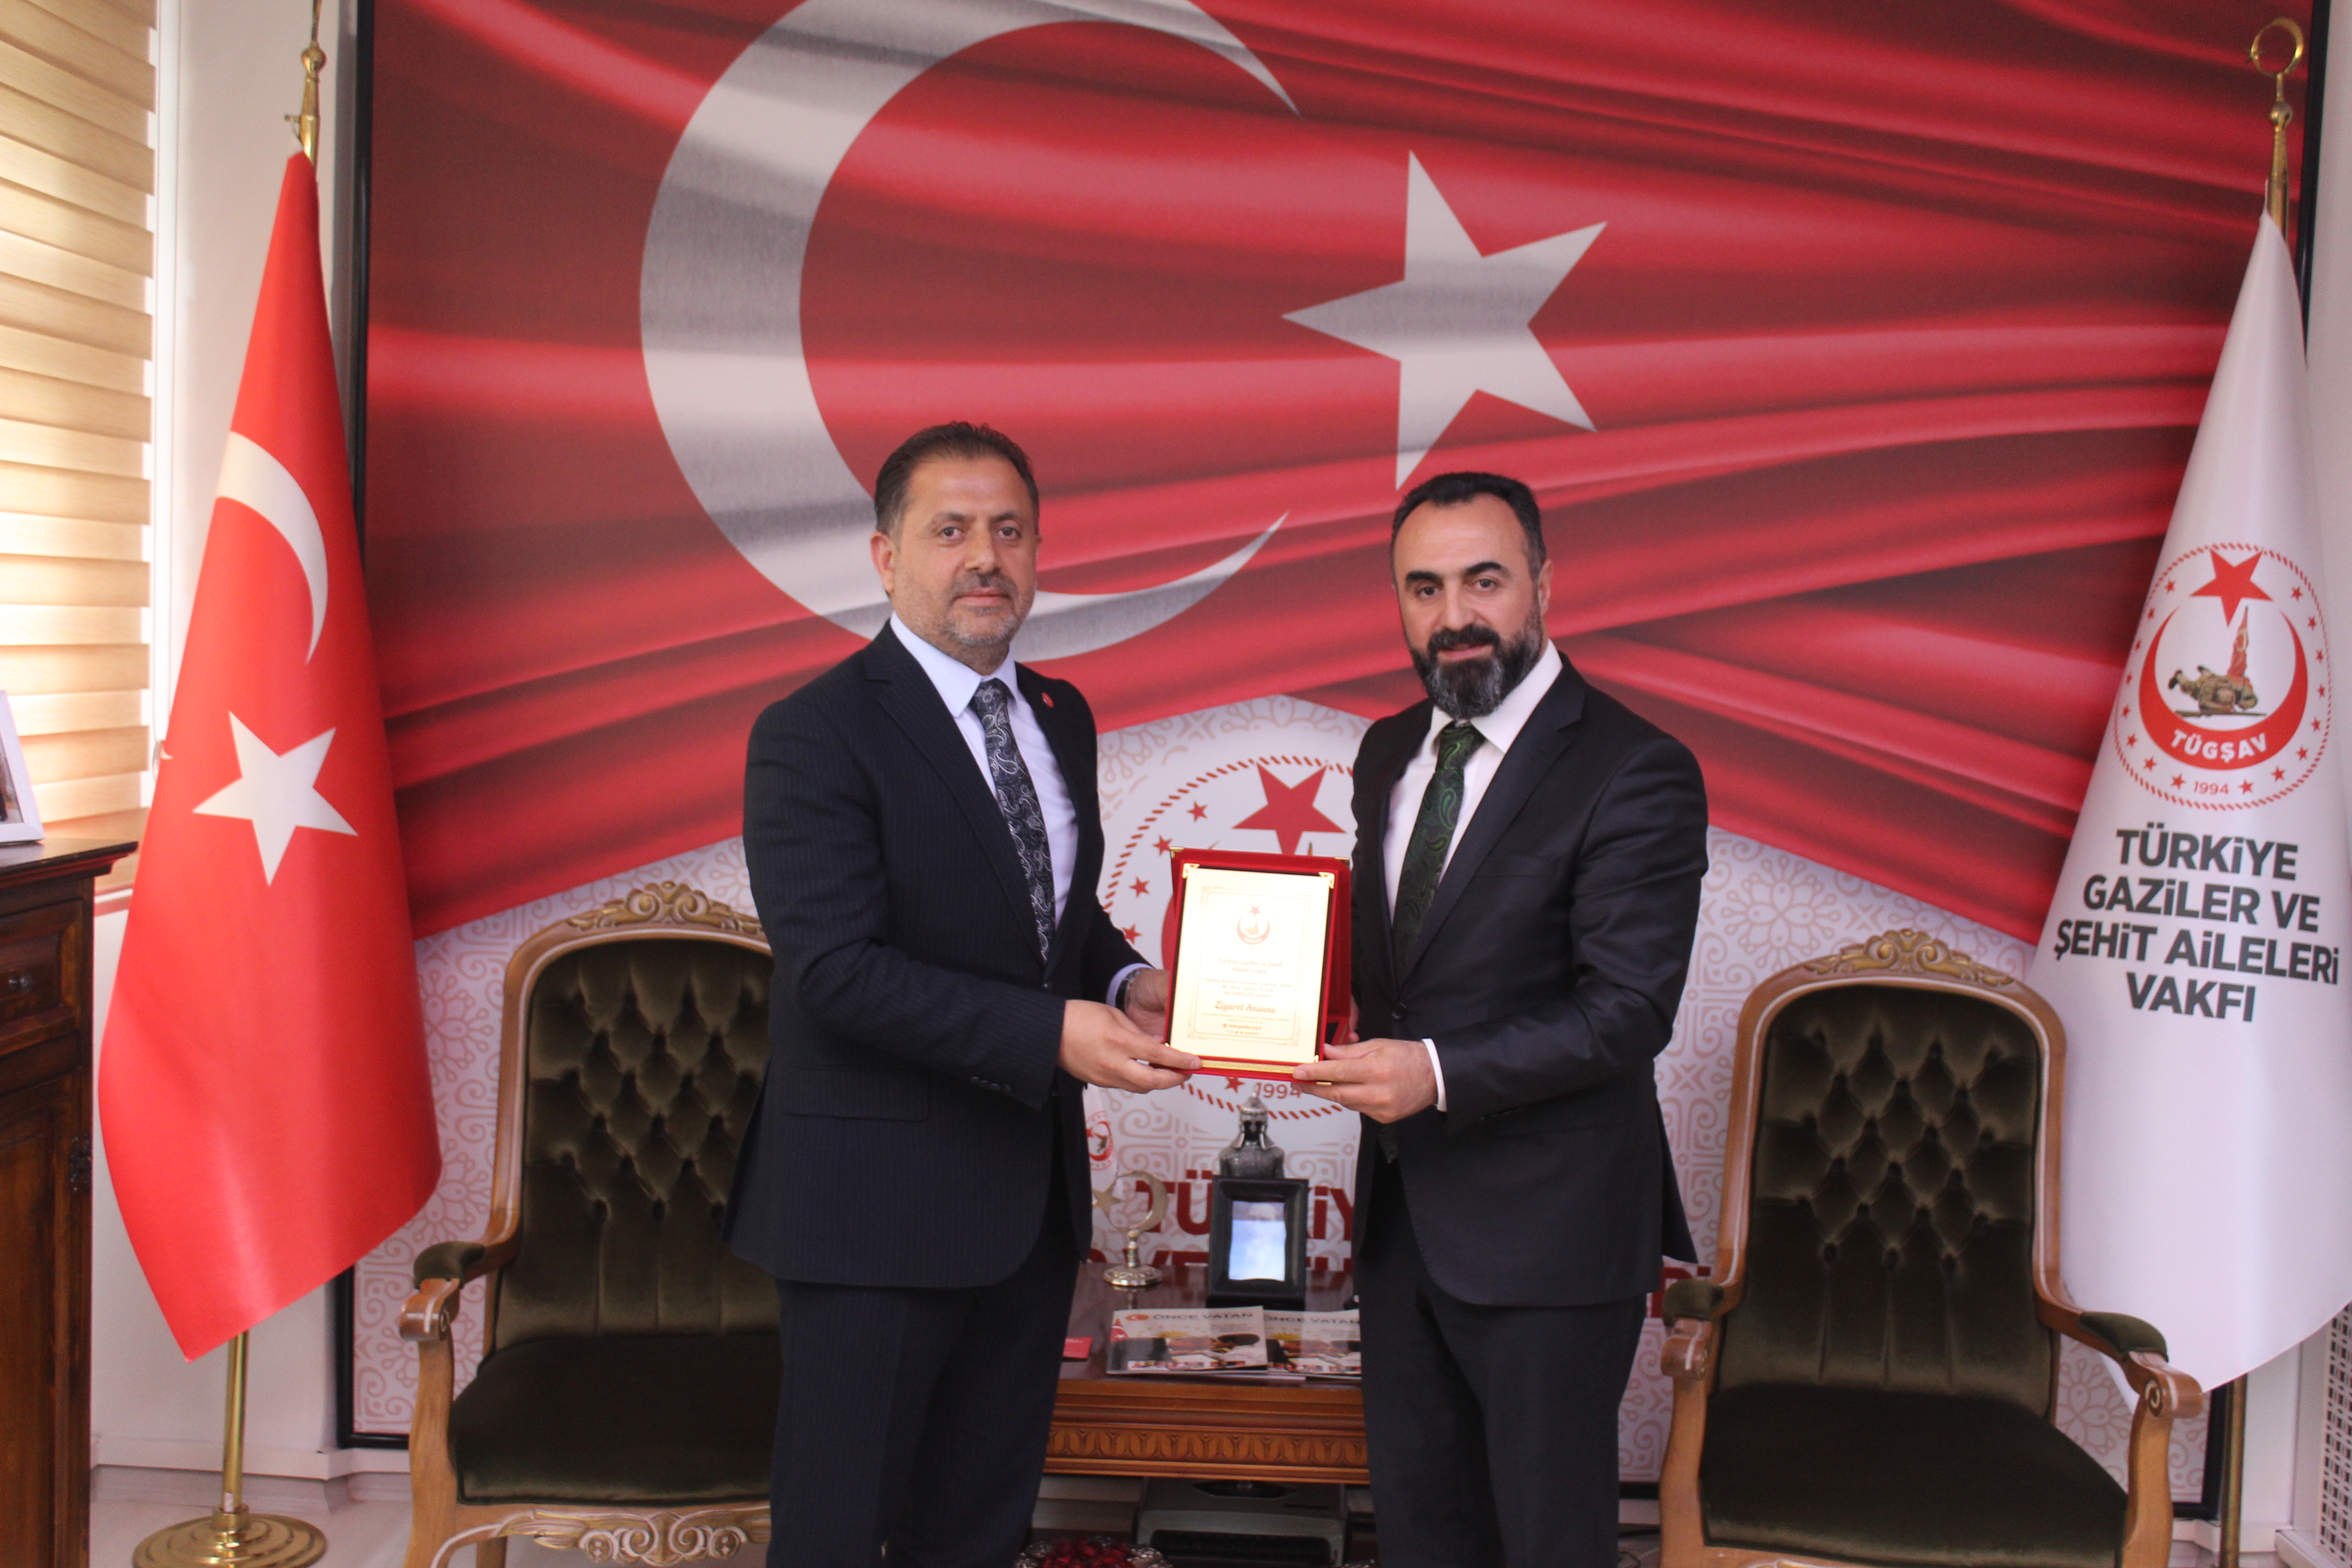 Yeniden Refah Partisi Genel Başkan Yardımcısı Ankara 1. Bölge Milletvekili Adayı Mehmet KADERLİ,Vakfımızı ziyaret ederek vatan kahramanlarımız ile bir araya geldiler.Nezaket ziyaretleri için kıymetli misafirimize teşekkür ederiz.